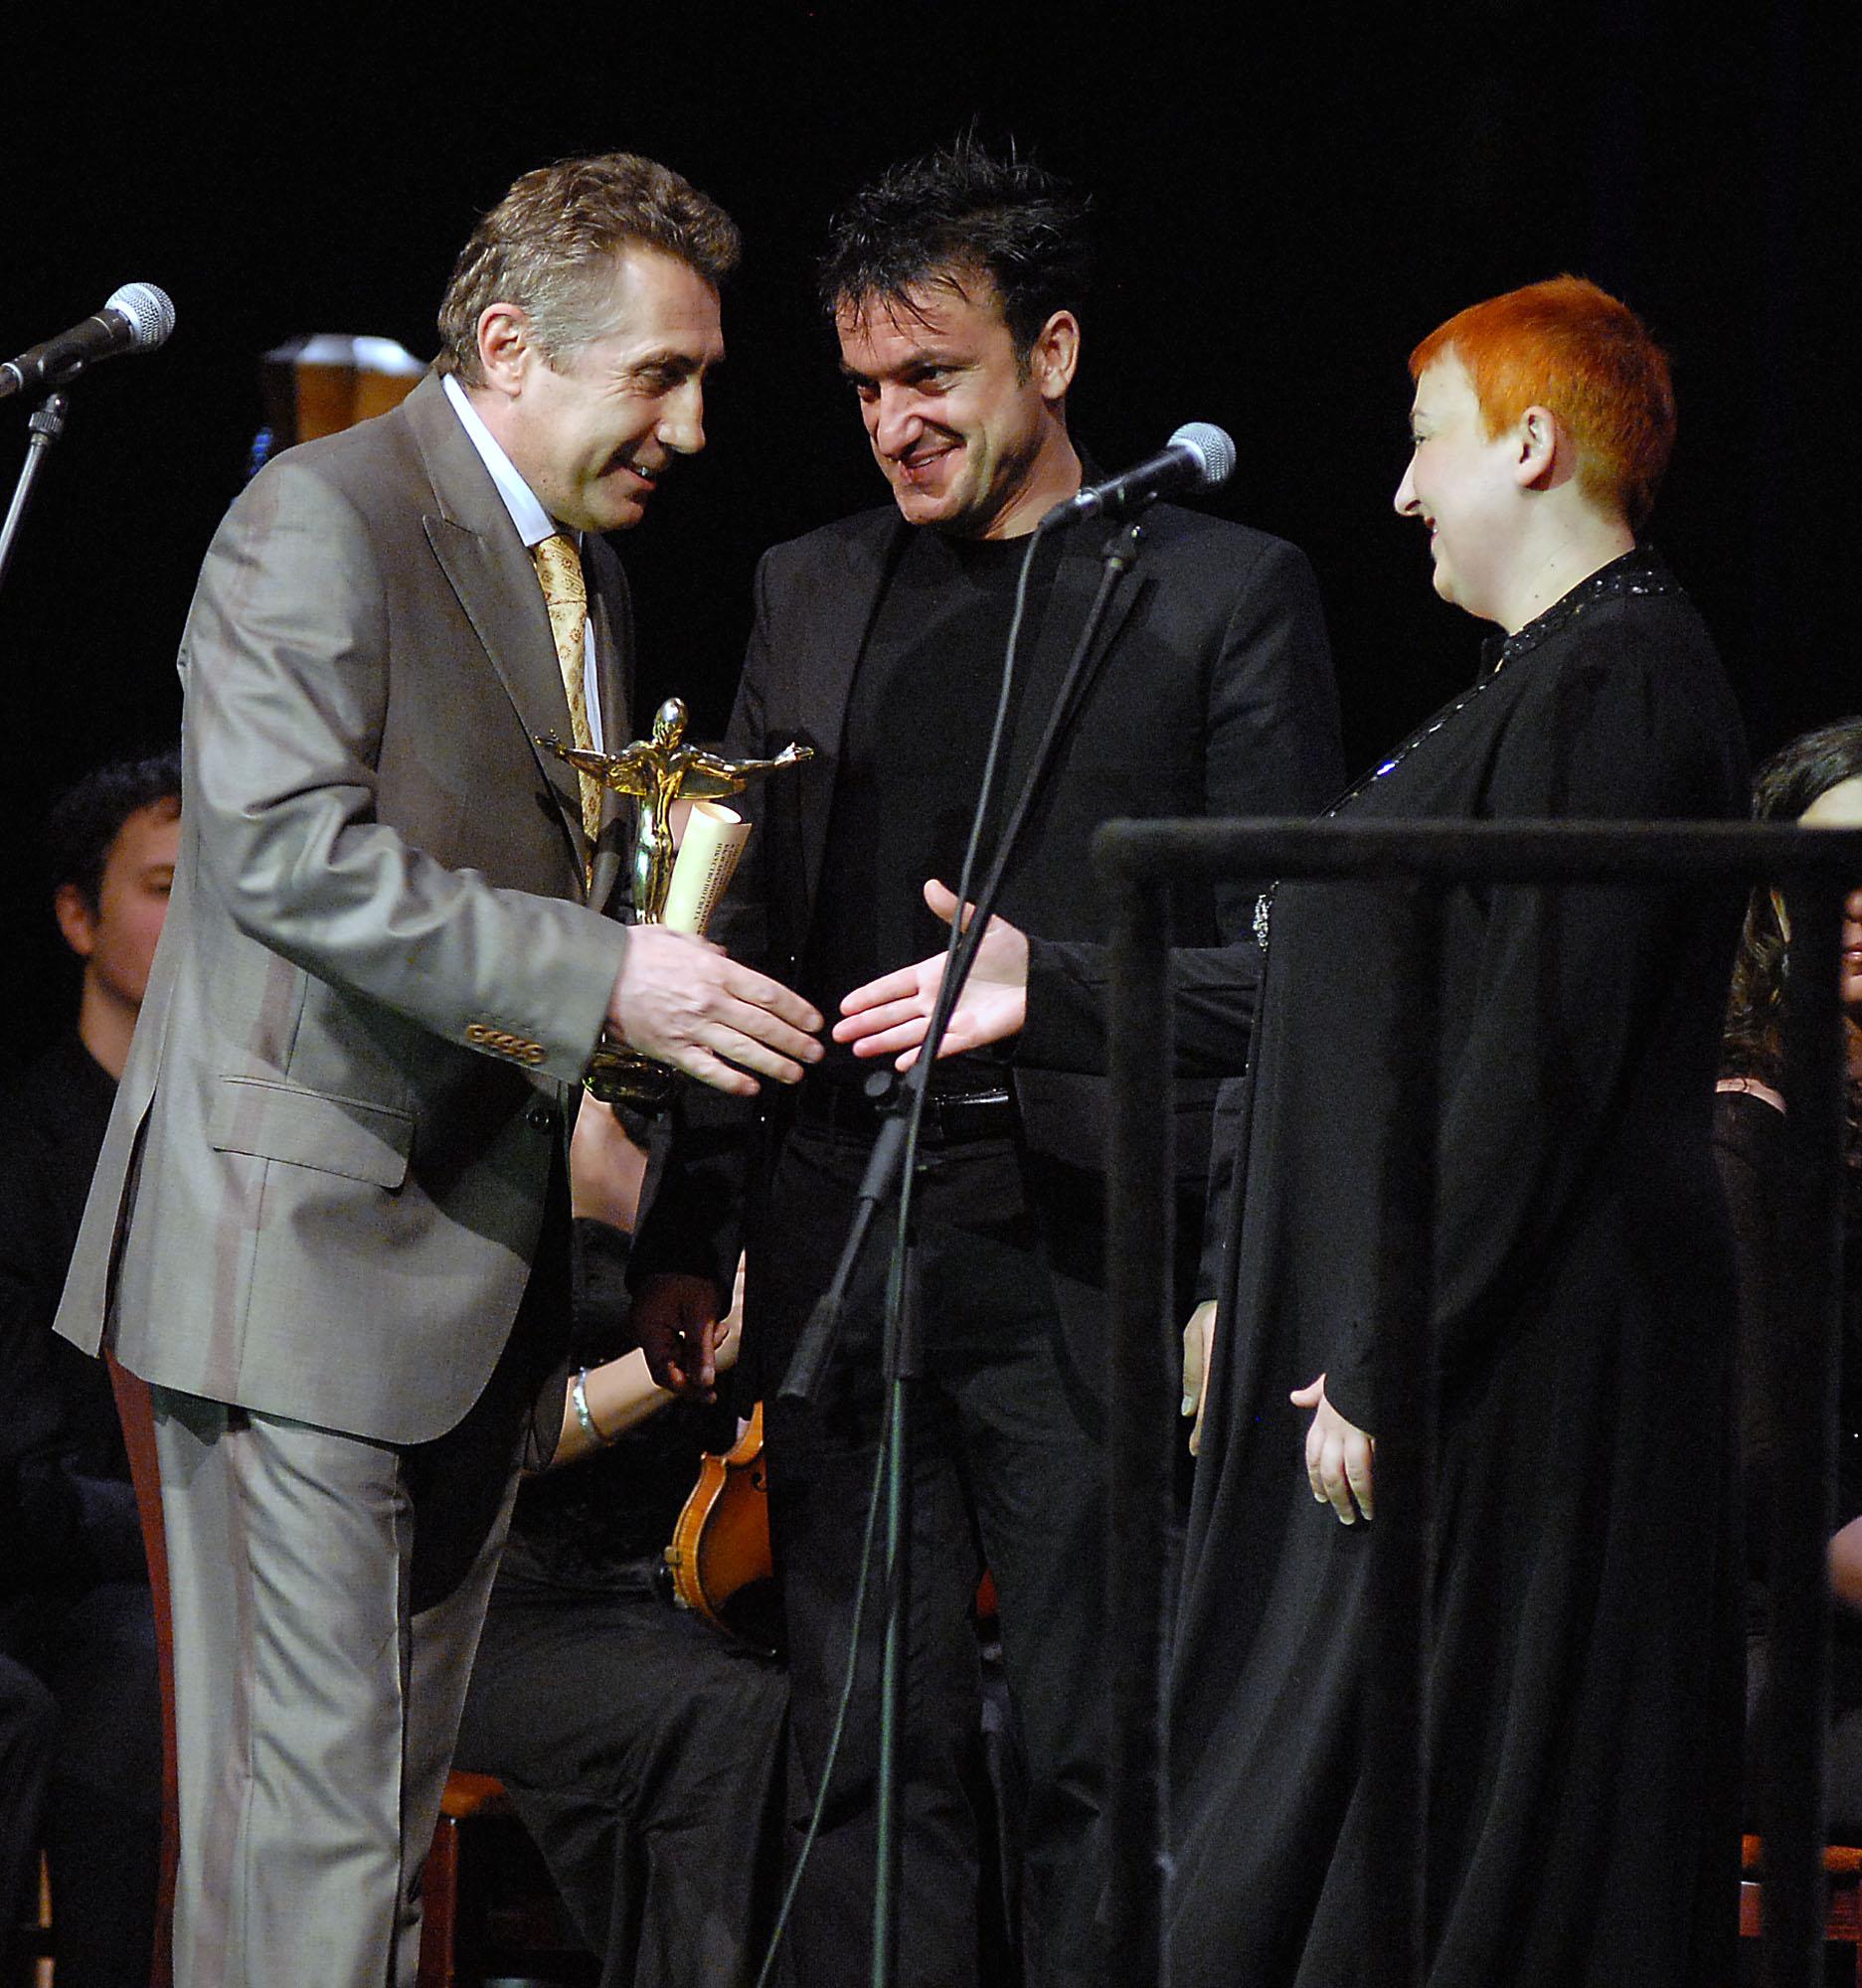 Васил Василев-Зуека и Нина Димитрова получават ”Икар” за принос в популяризирането на българското театрално изкуство - 2007 г.